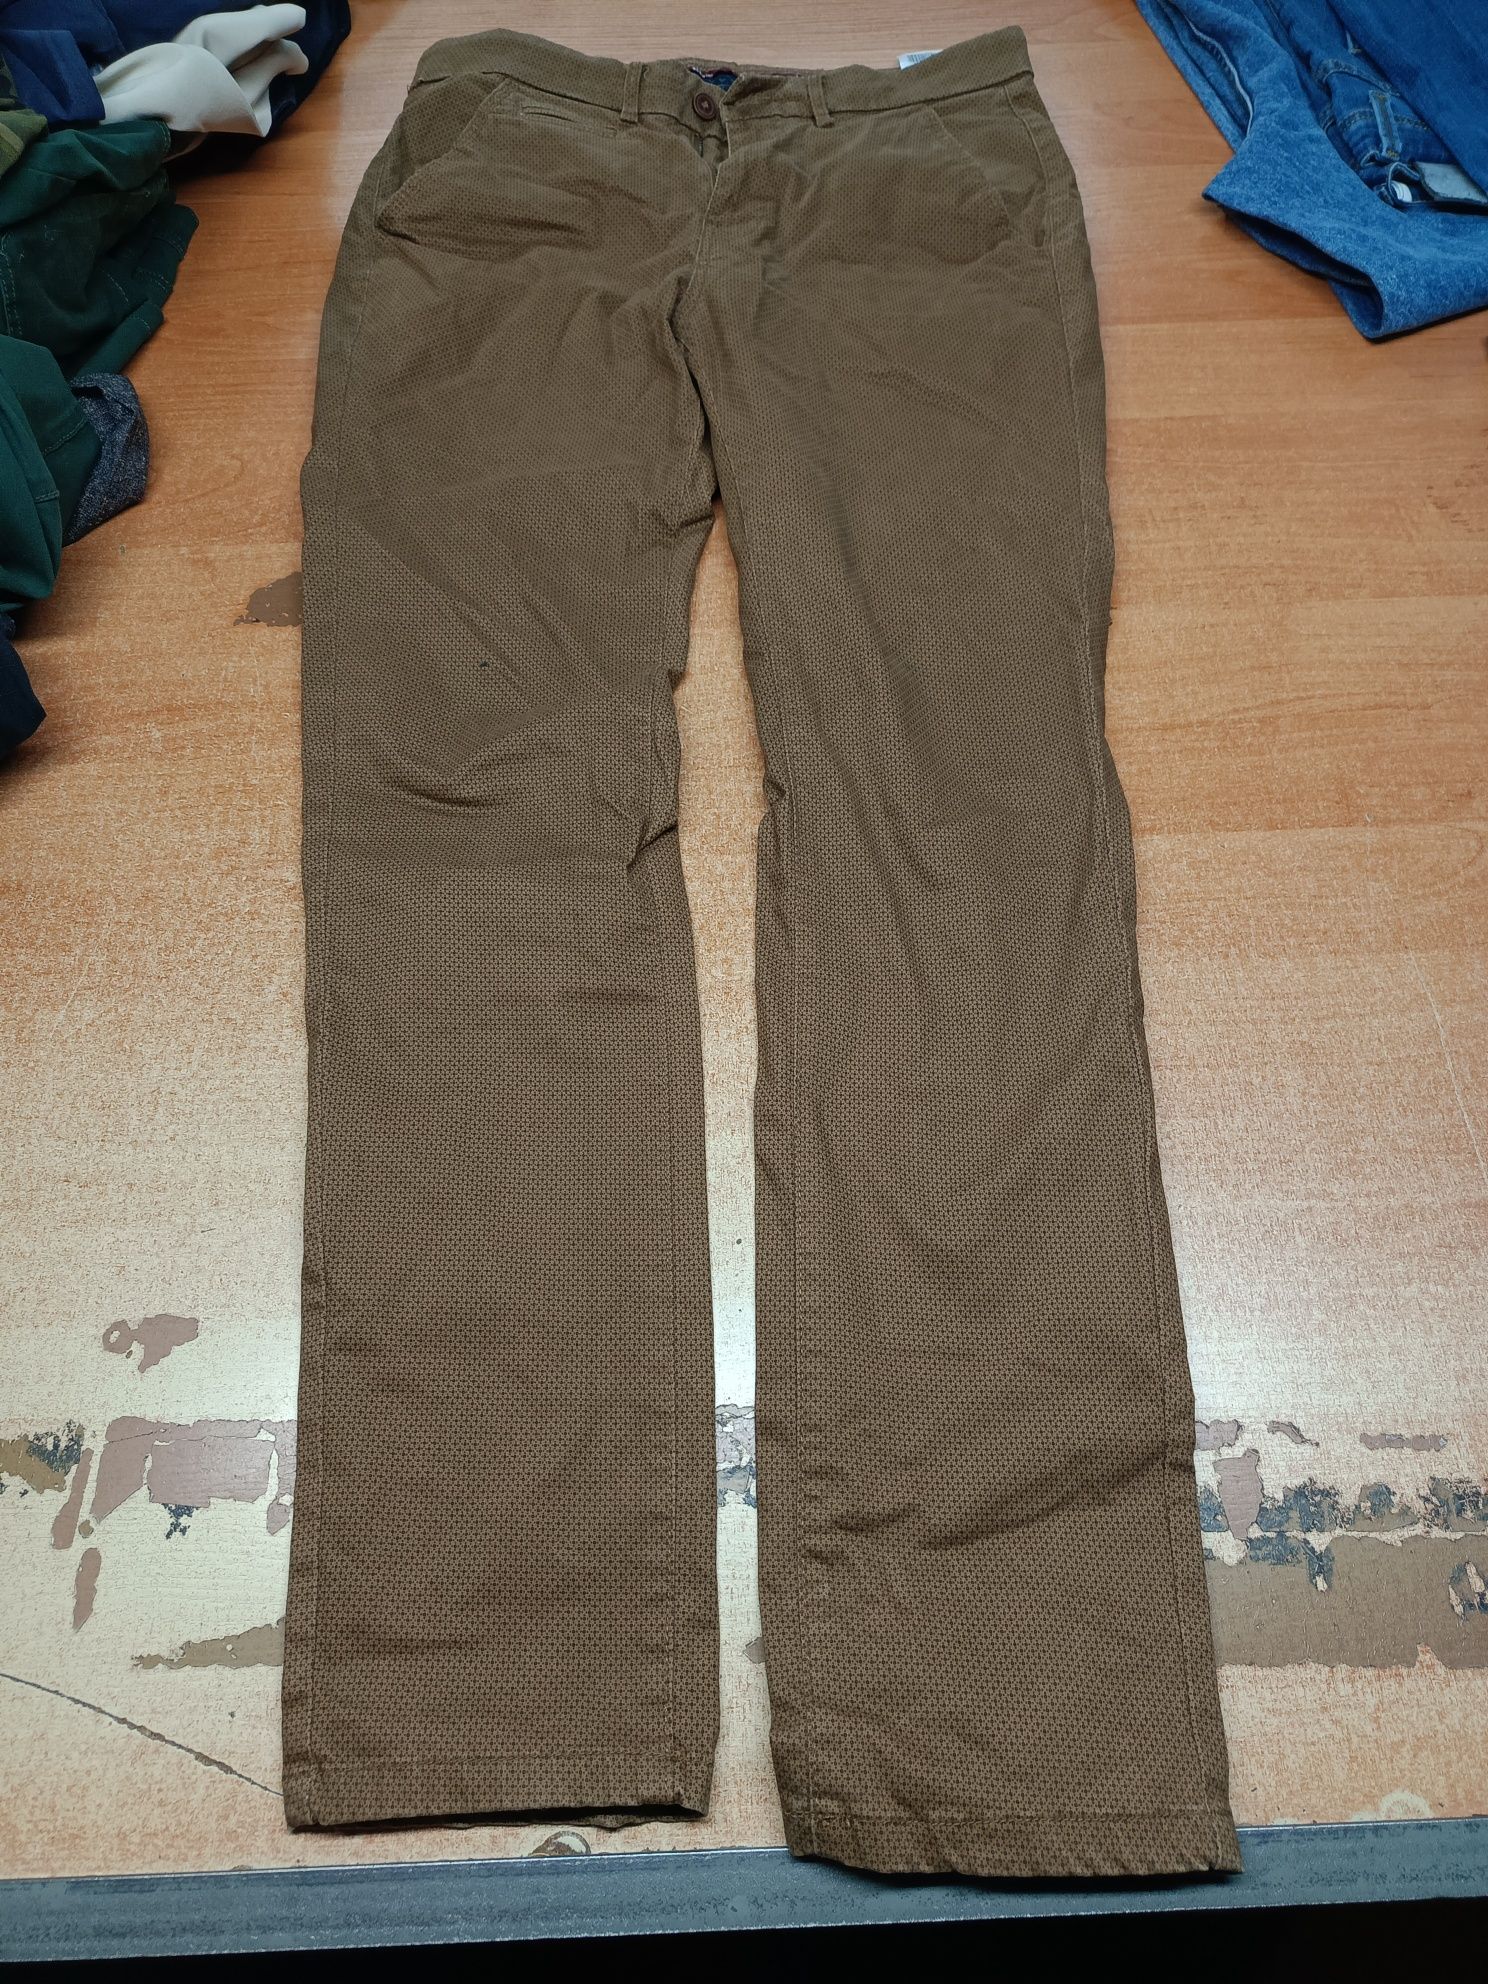 Spodnie męskie od xs do xxl sortowane